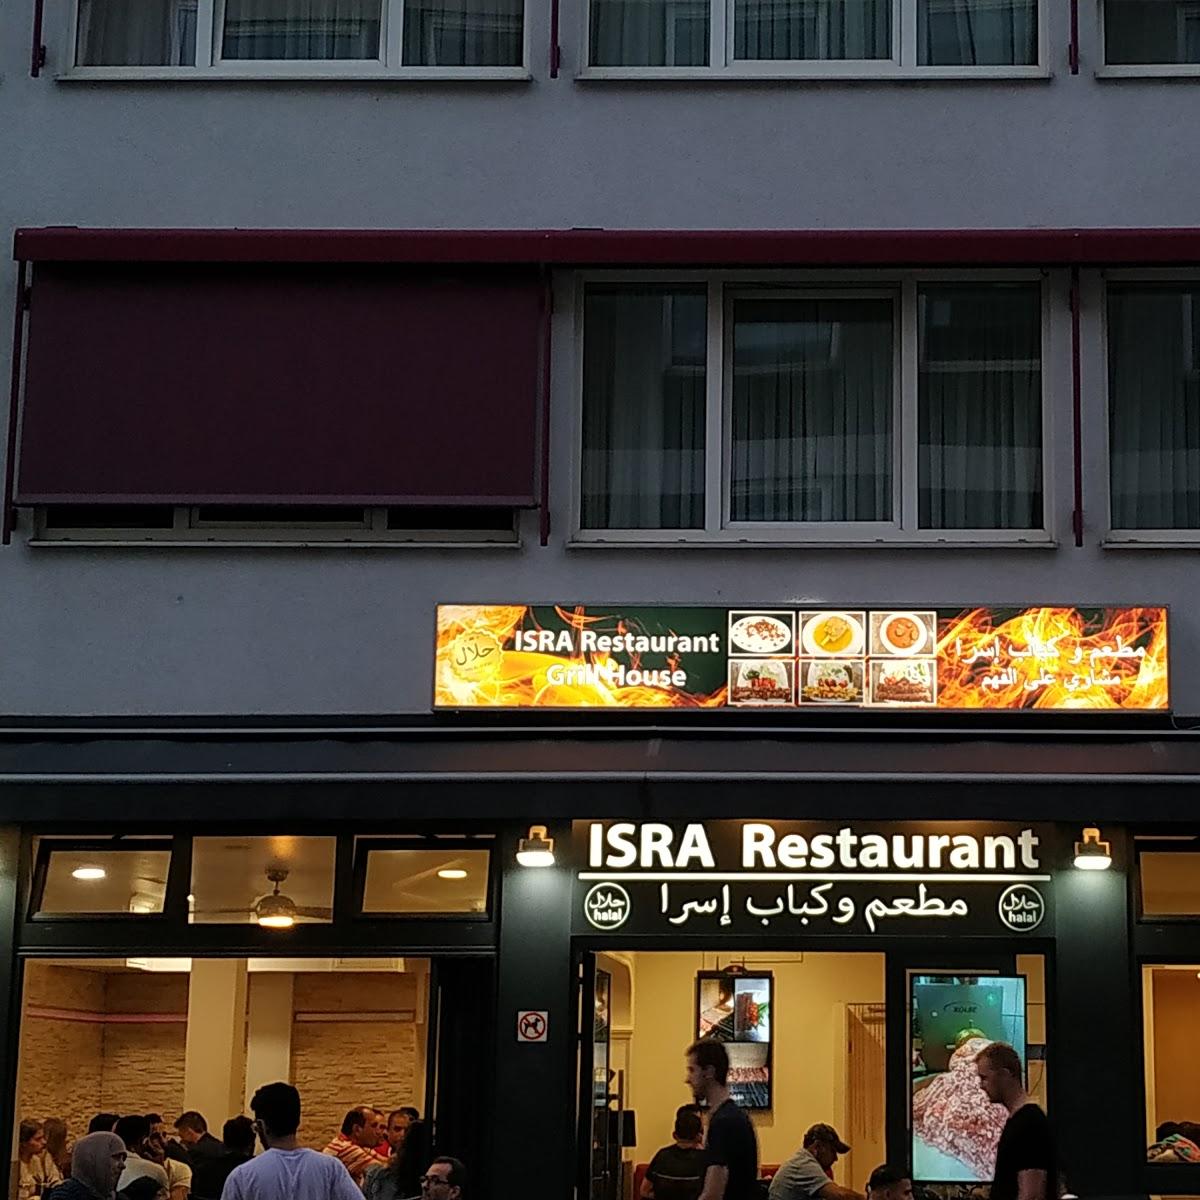 Restaurant "Sara Restaurant" in München